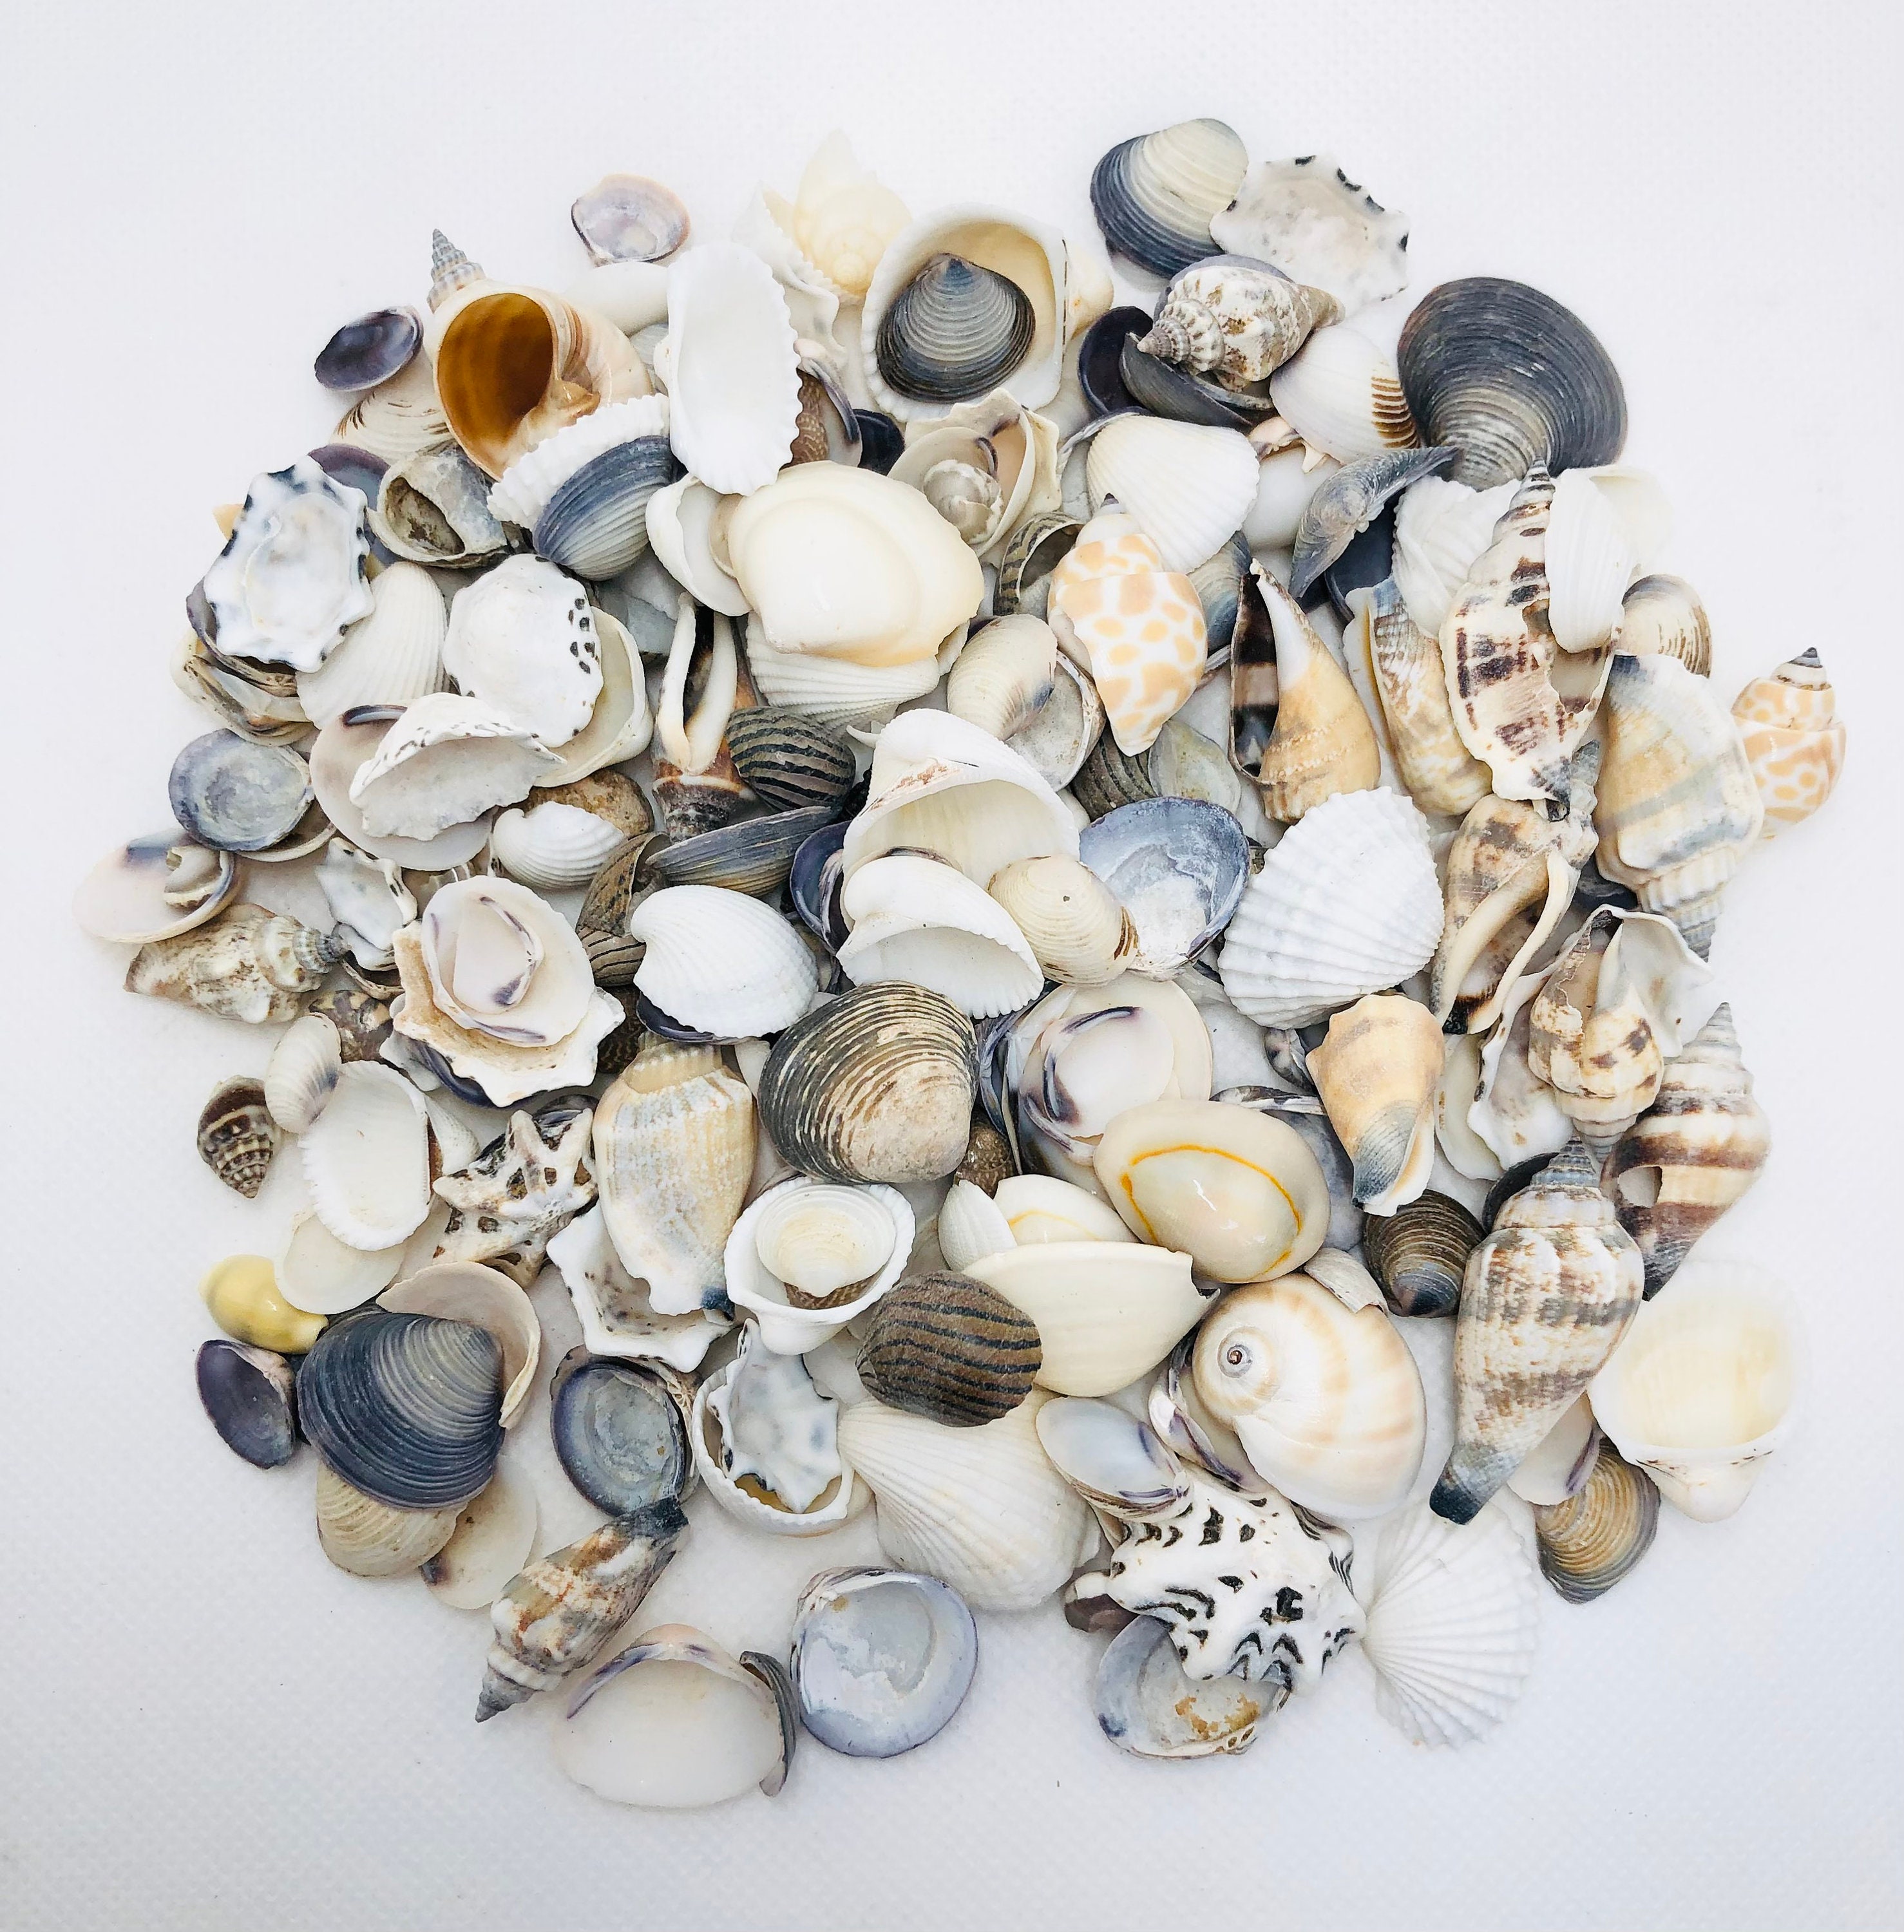 Small Shells for Crafts, Jewelry, Terrarium, Art Collectors Shells